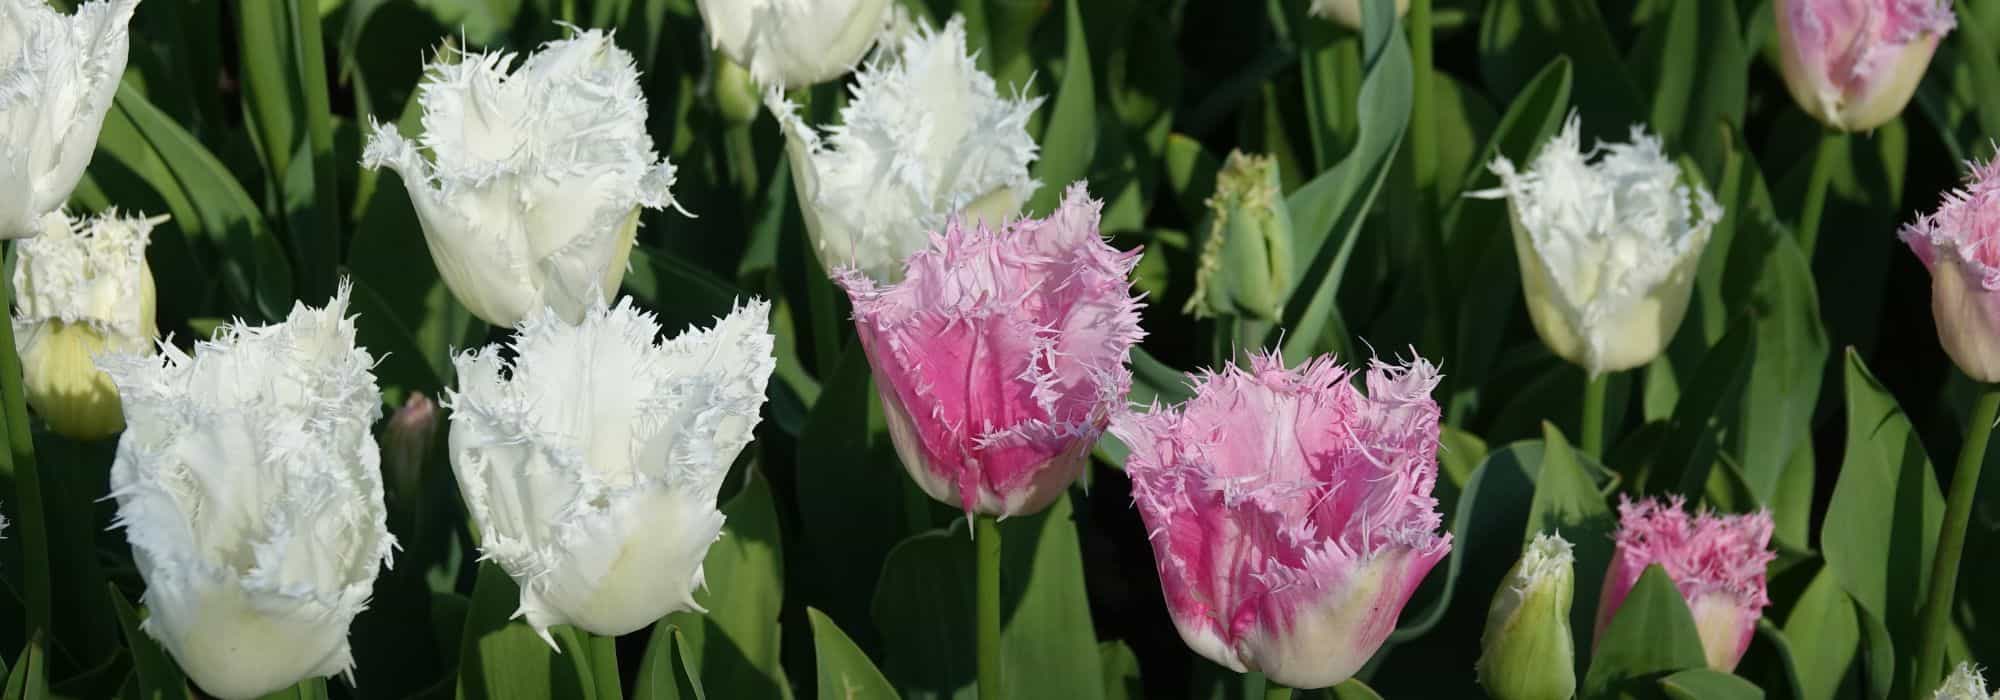 Tulipe frangée : un bijou pour le jardin